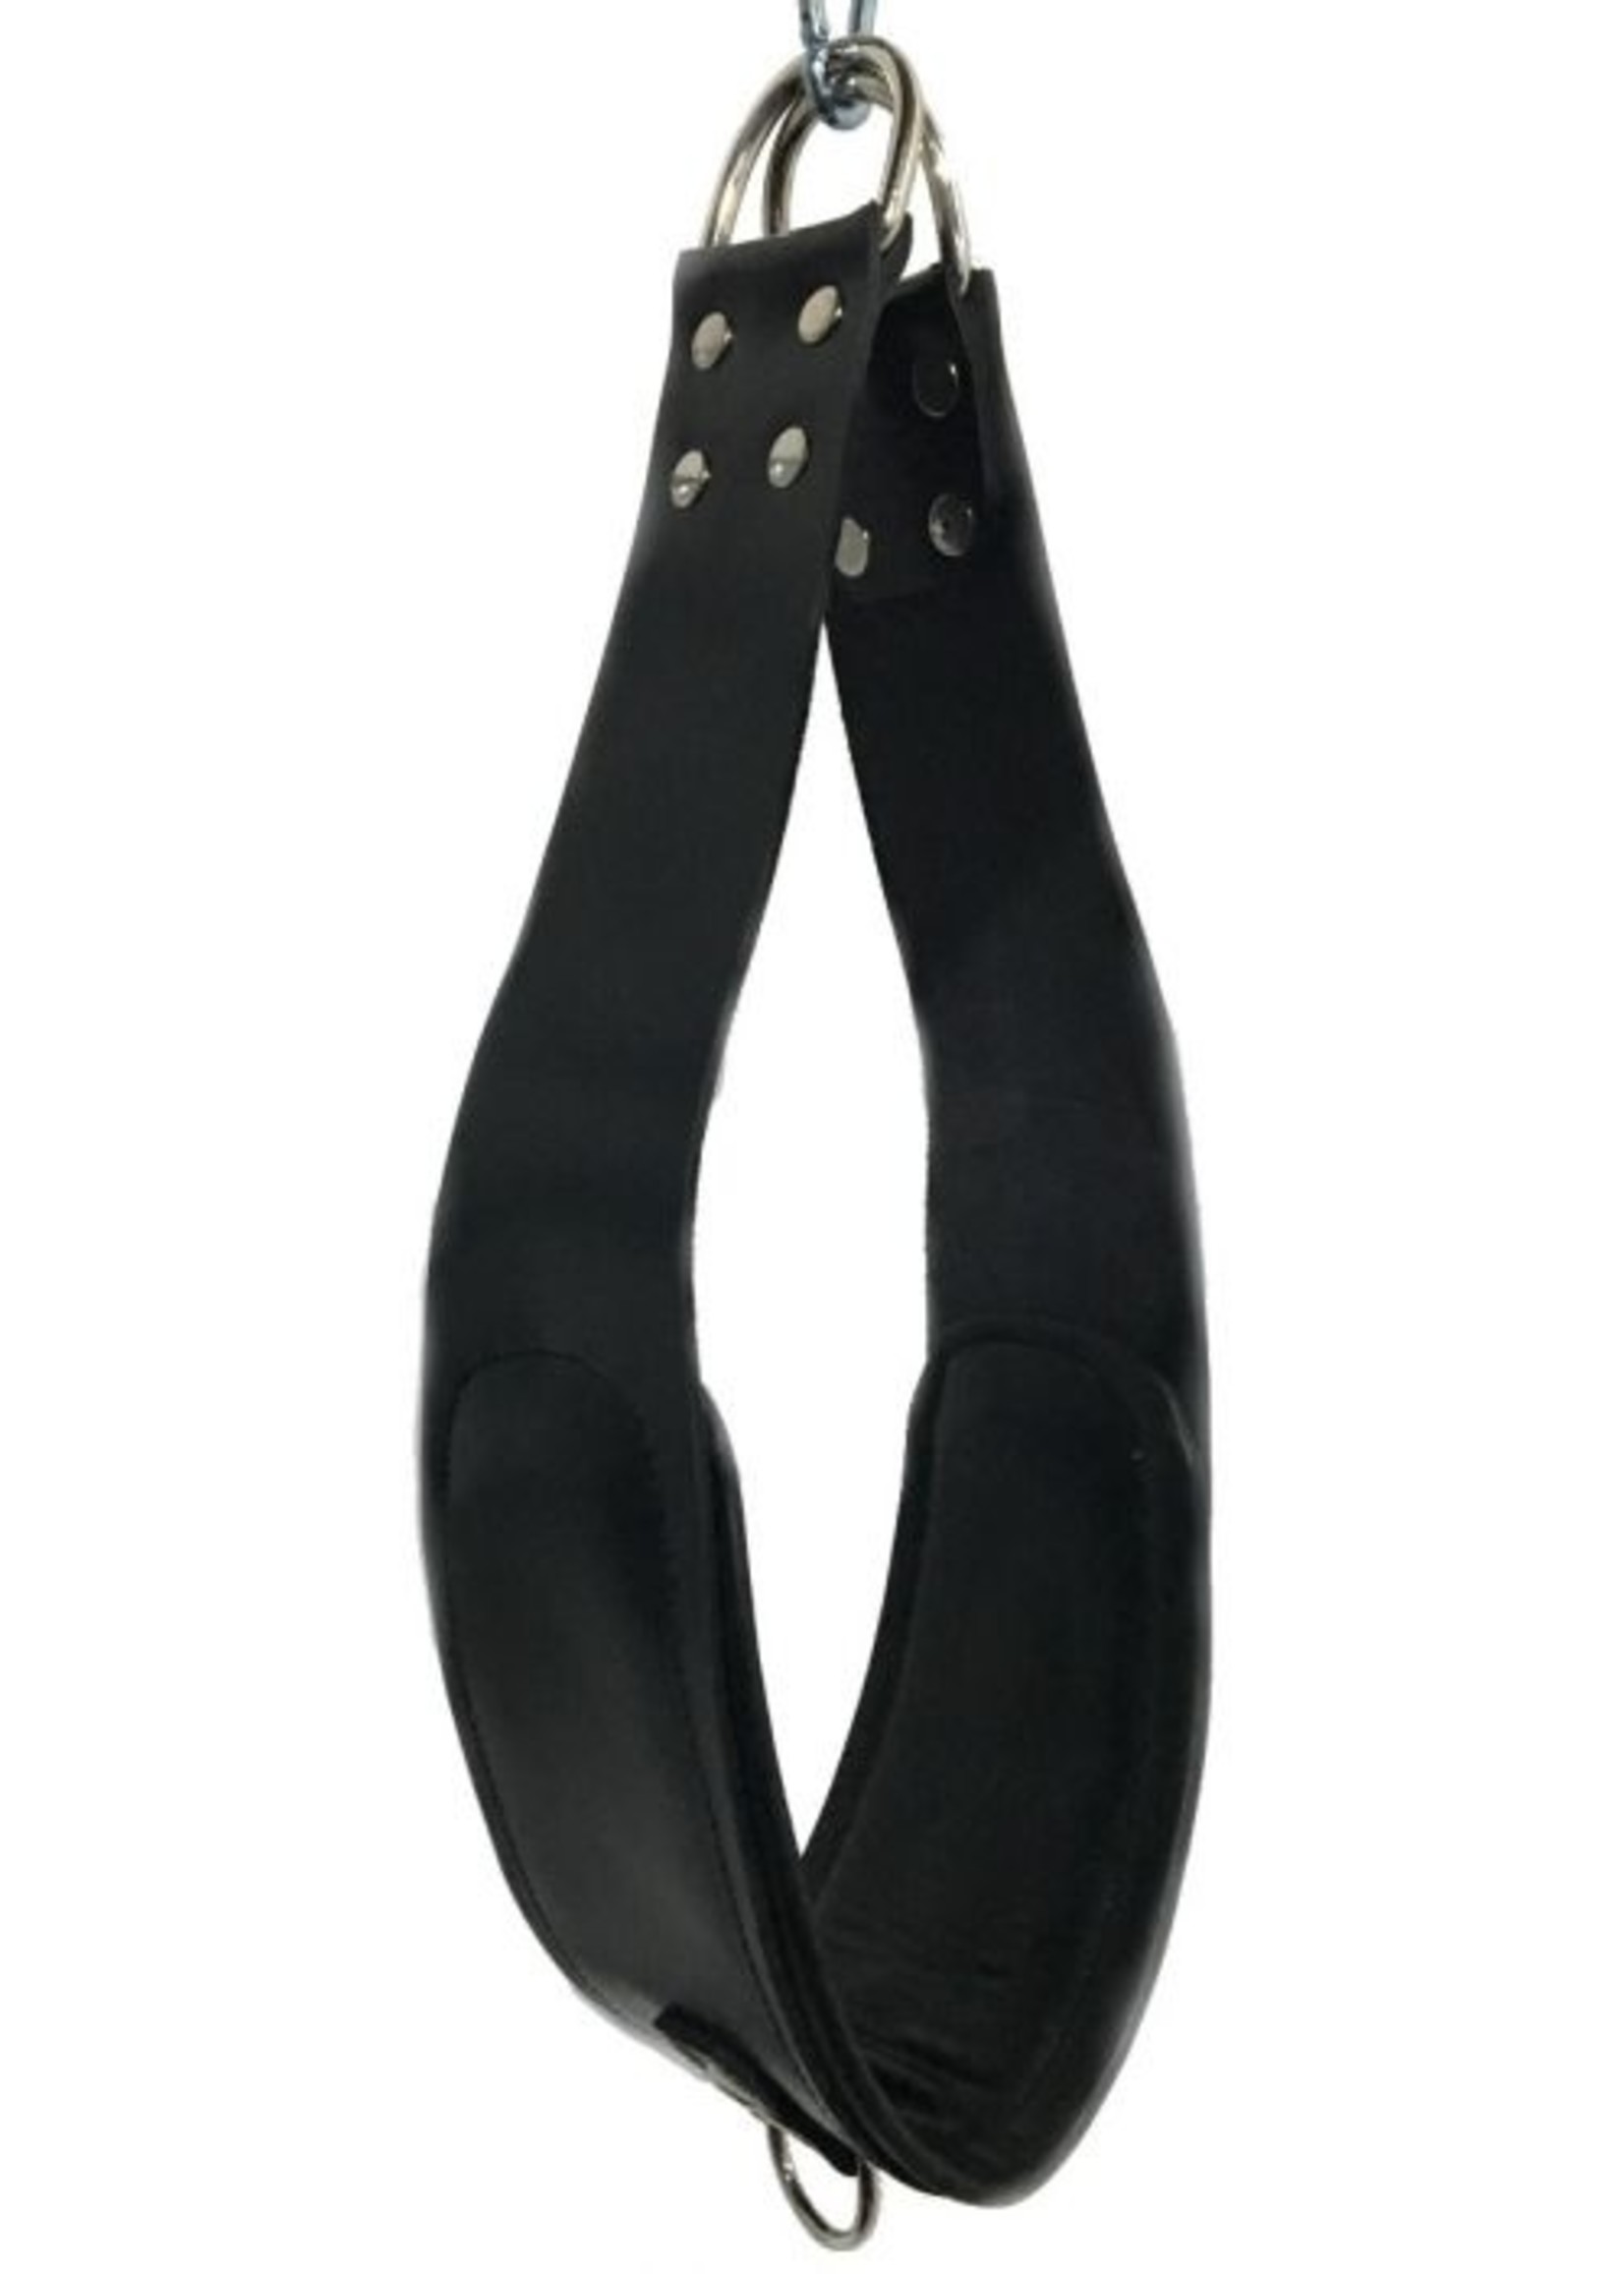 ZennToys Deluxe leather VIP sling - full set